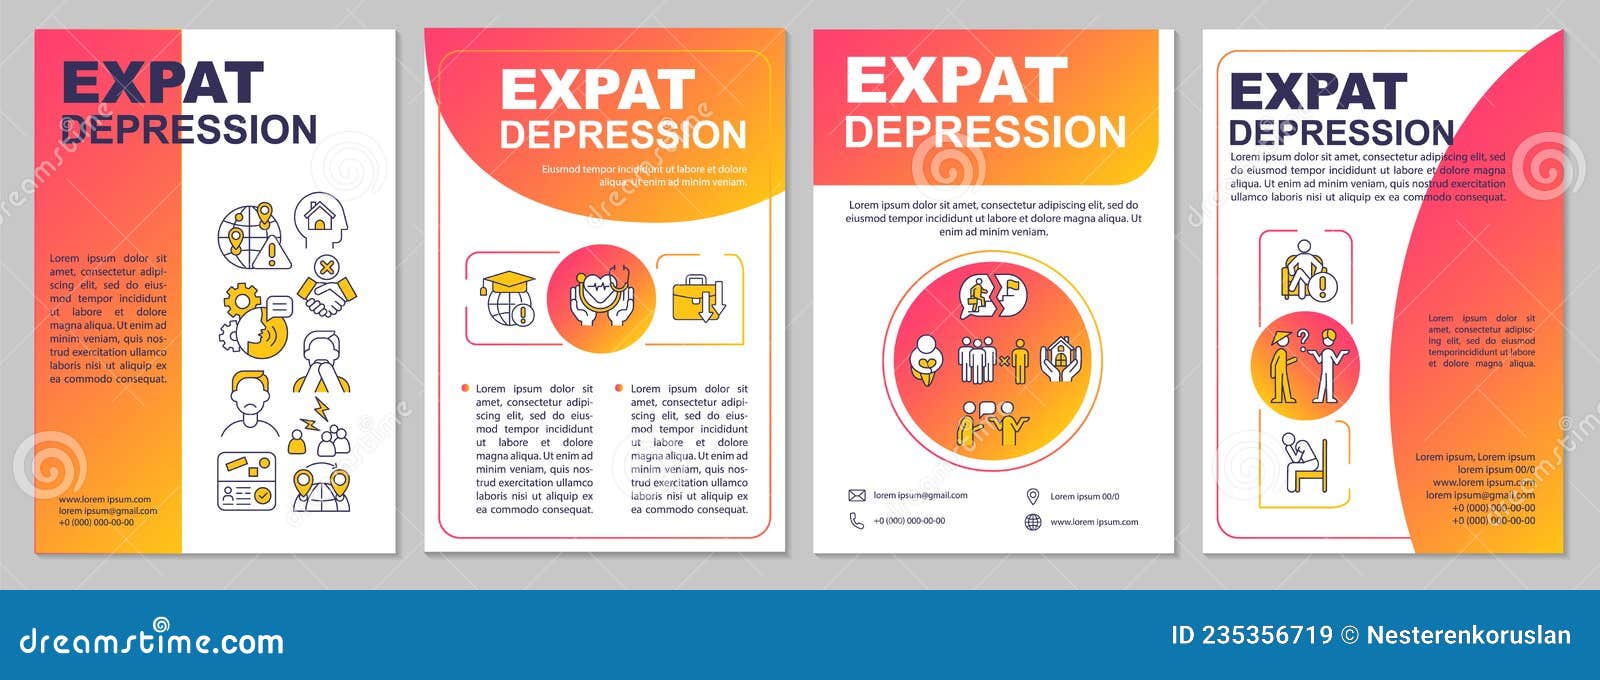 Expat Depression Brochure Template Cartoon Vector | CartoonDealer.com ...